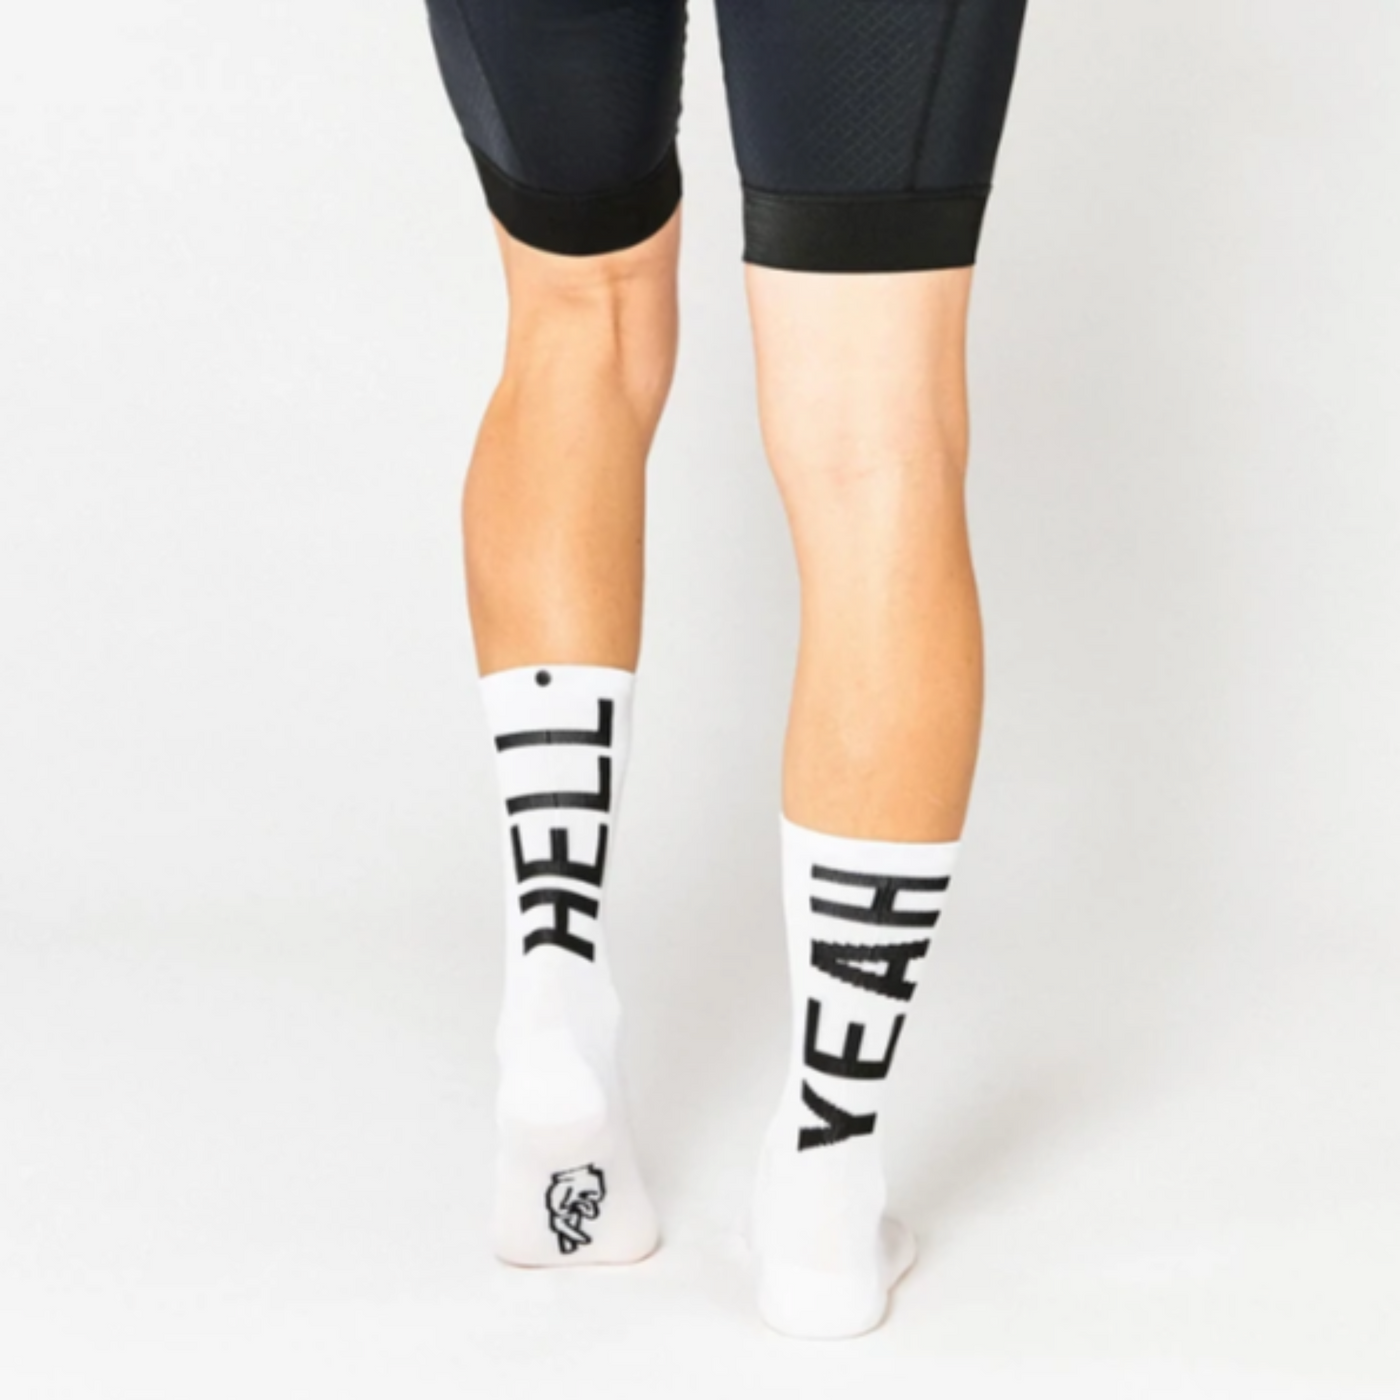 Cykelstrømpe i hvid med sort skrift både foran og bagpå "Hell yeah". Den er fra mærket Fingers crossed og modellen hedder #666 hell yeah 2.0.